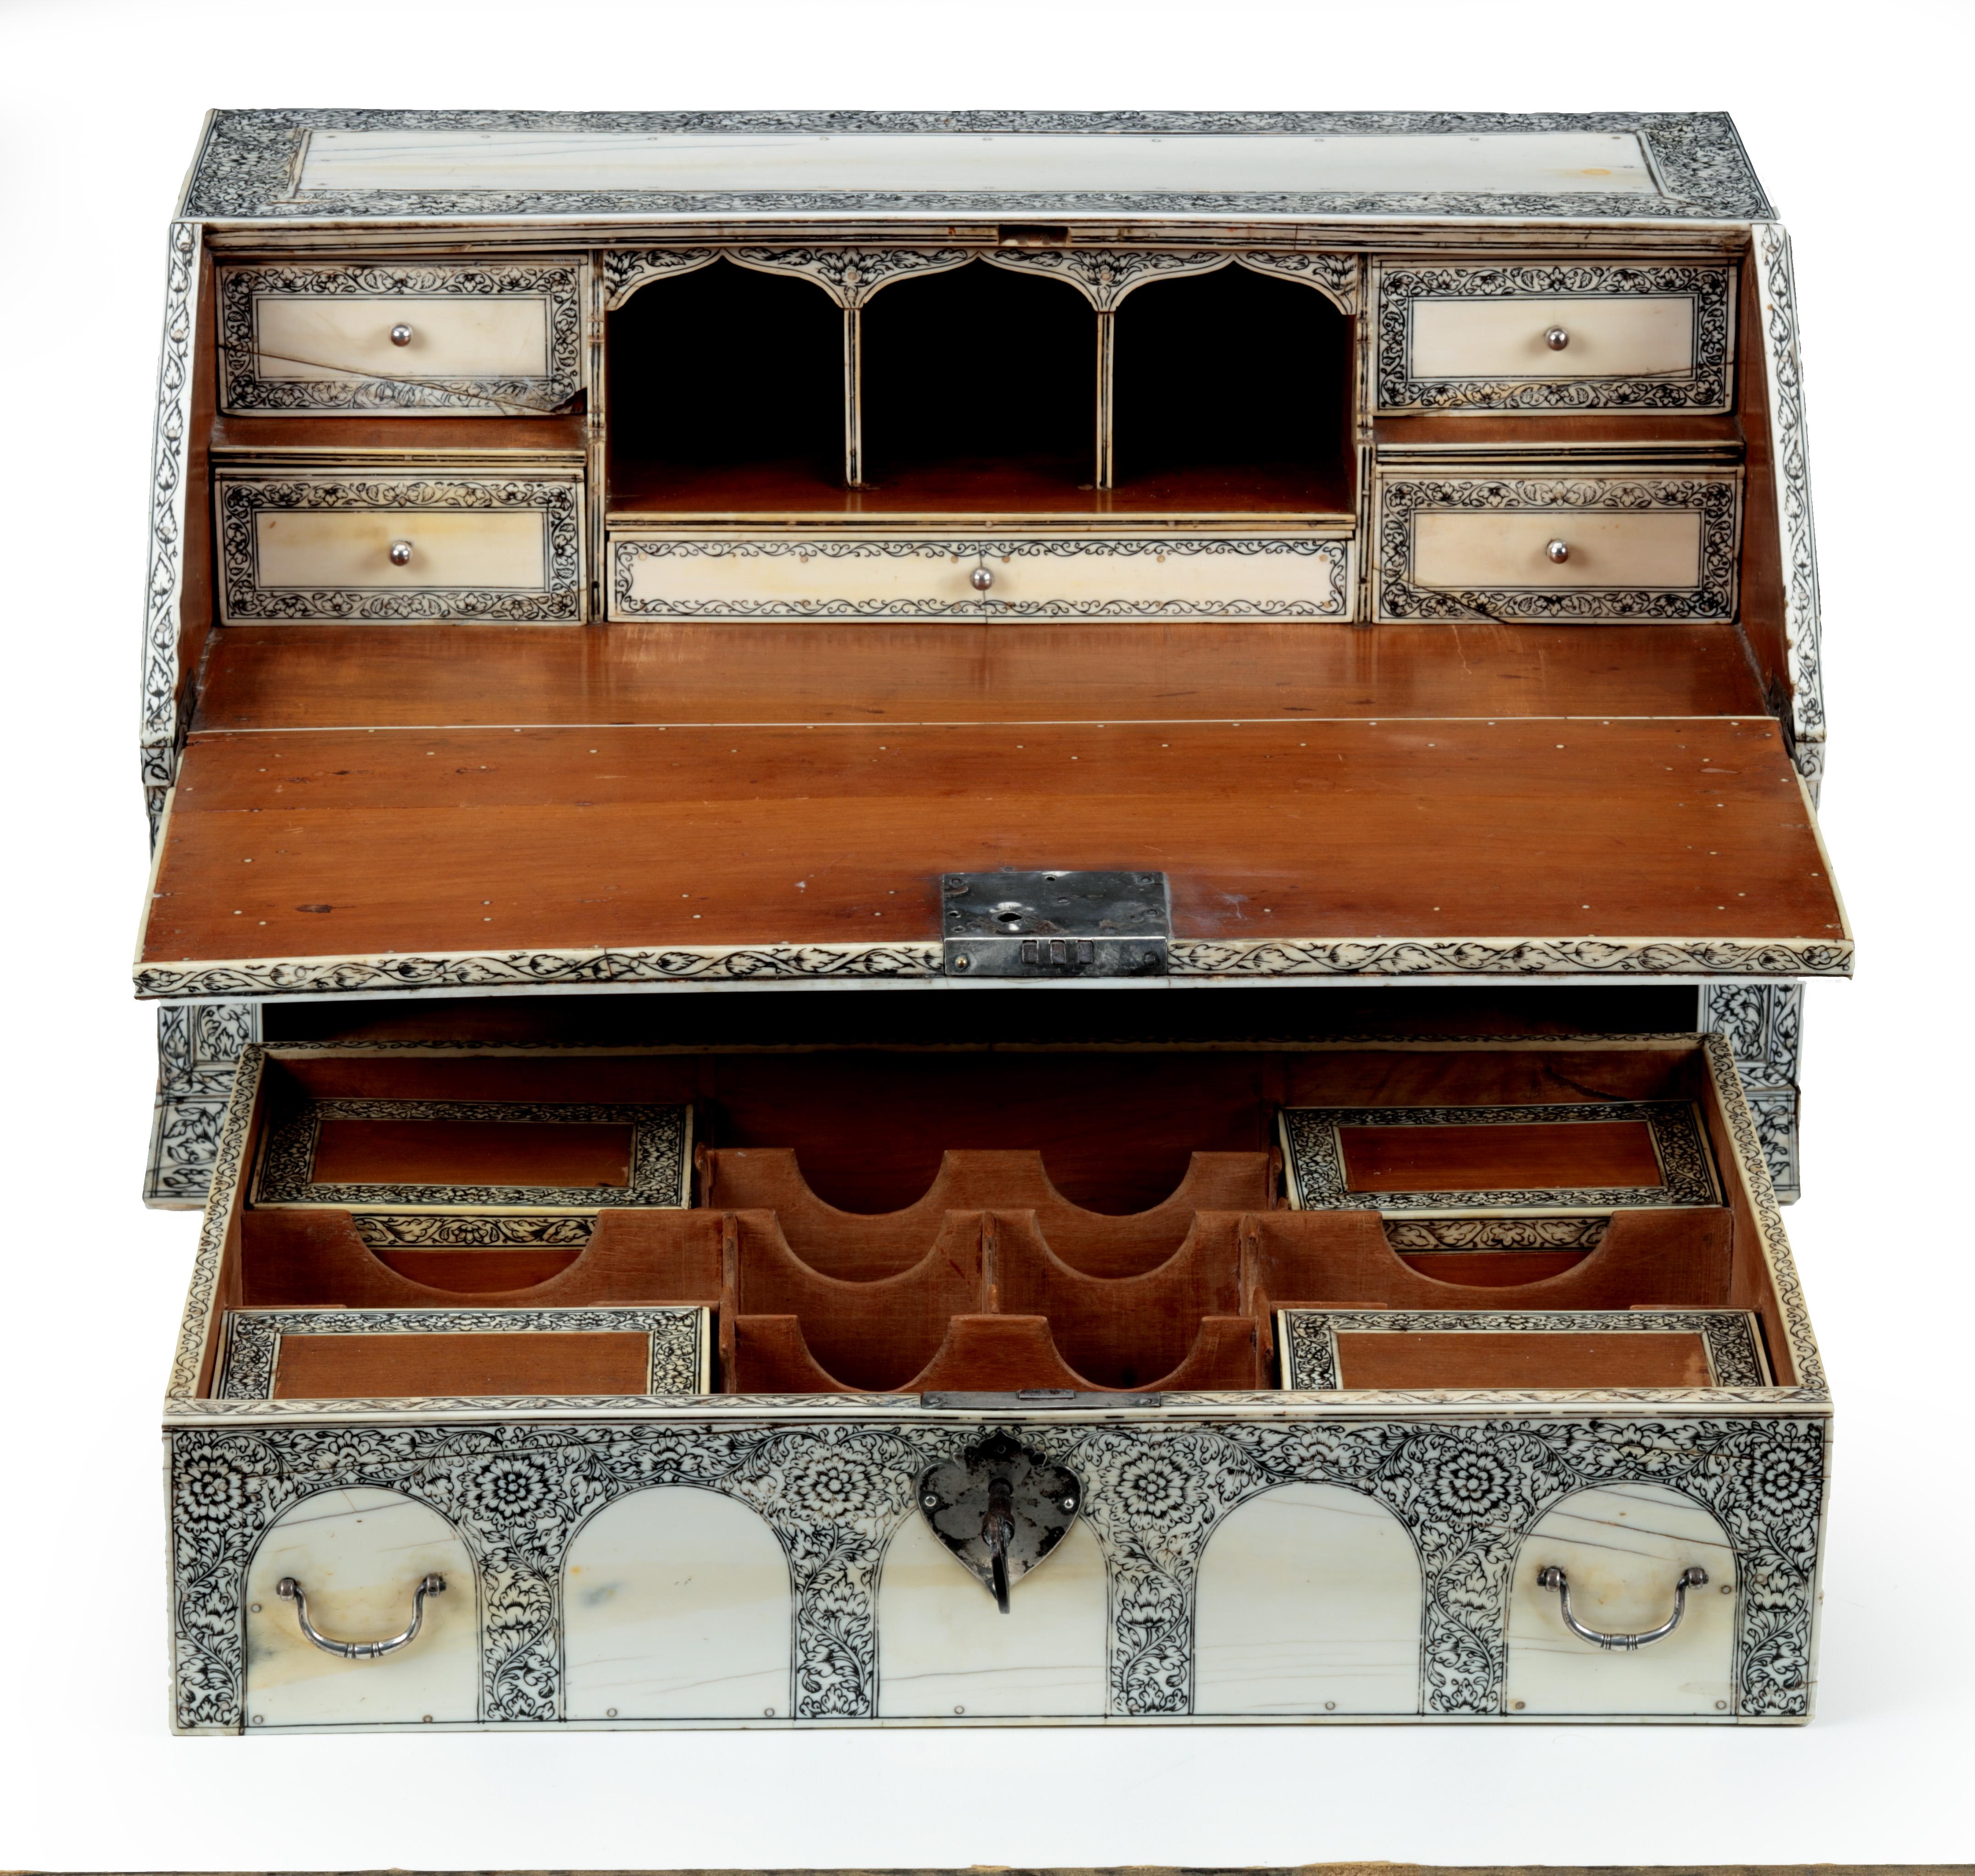 Ein Vizagapatam Schreibpult aus Sandelholz, furniert und mit Silberbeschlägen versehen

Indien, Coromandel-Küste, Visakhapatnam, um 1875

Der Schreibtisch mit einer großen Schublade unter einem schrägen Deckel, der sich zu einer Schreibfläche